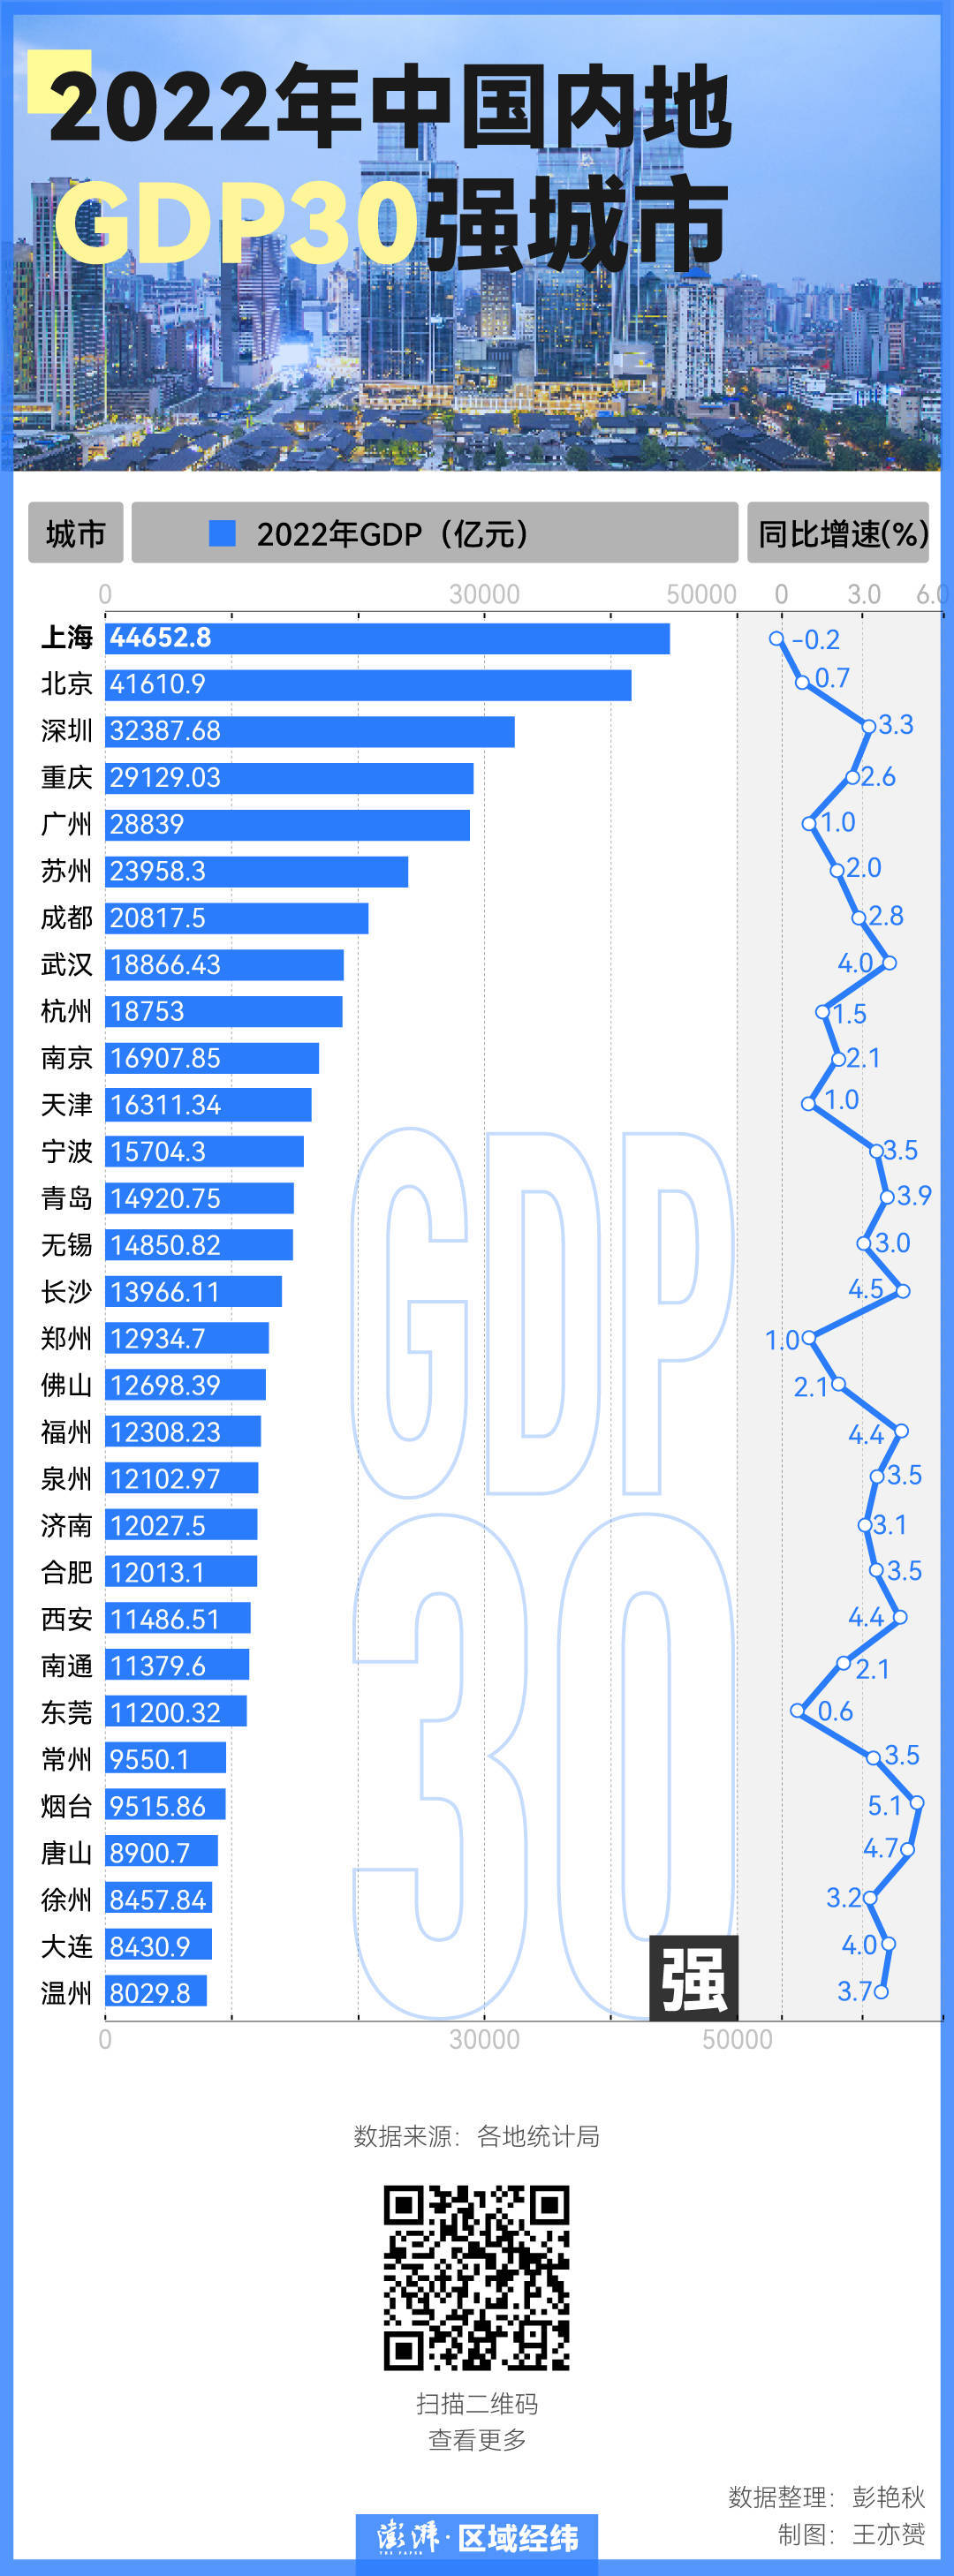 2022年中国GDP十强城市格局发生变化， 重庆超过广州，成为中国经济“第四城”， 武汉则实现了对杭州的超越。除了十强的格局变化，2022年， 福州、泉州也超过了济南、合肥，升至全国第18、19位，西安超过了南通、东莞，升至第22位。